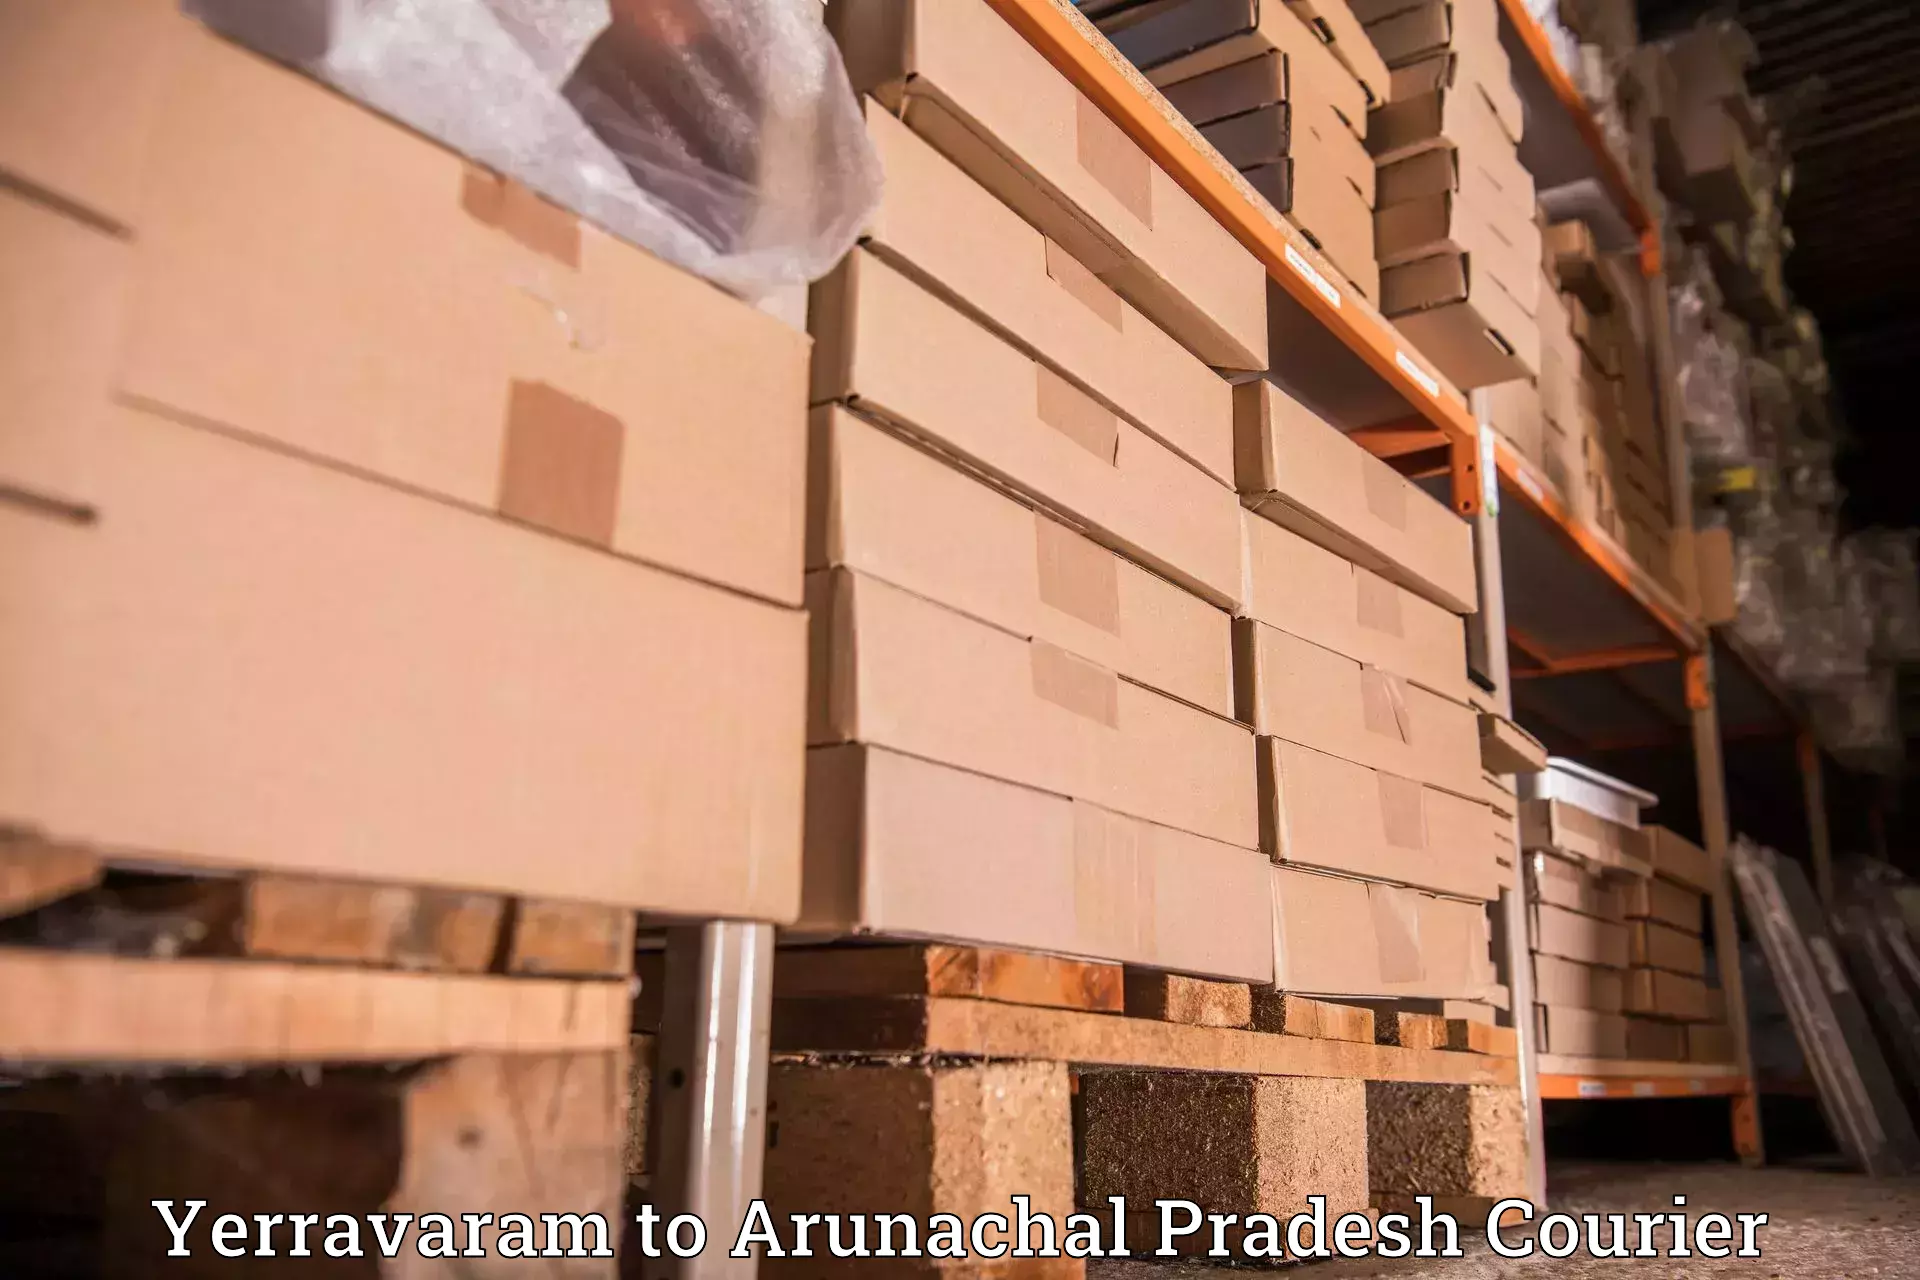 Easy access courier services Yerravaram to Arunachal Pradesh